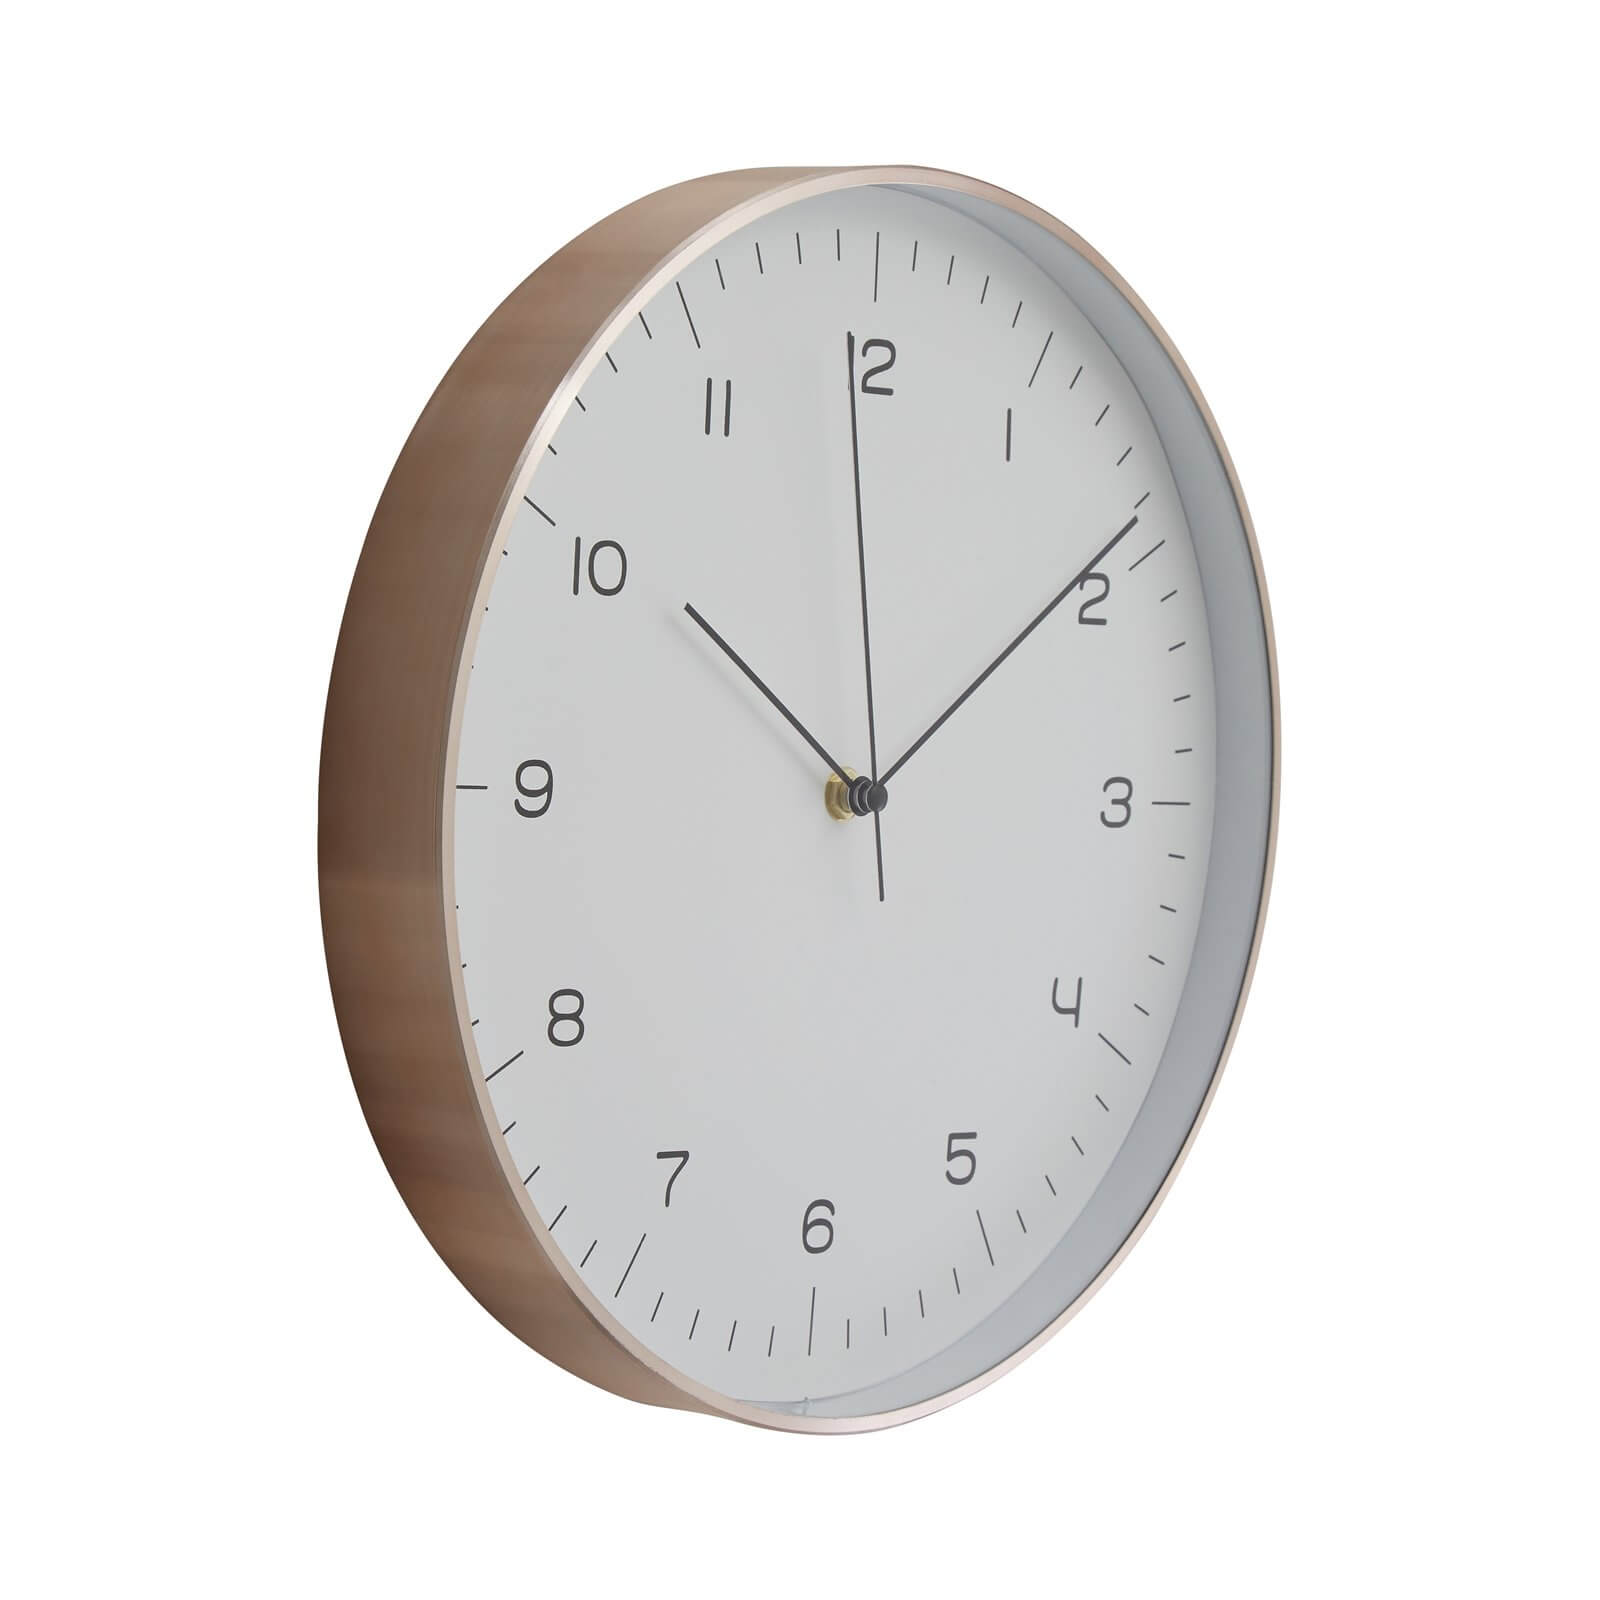 Elko Wall Clock - Copper